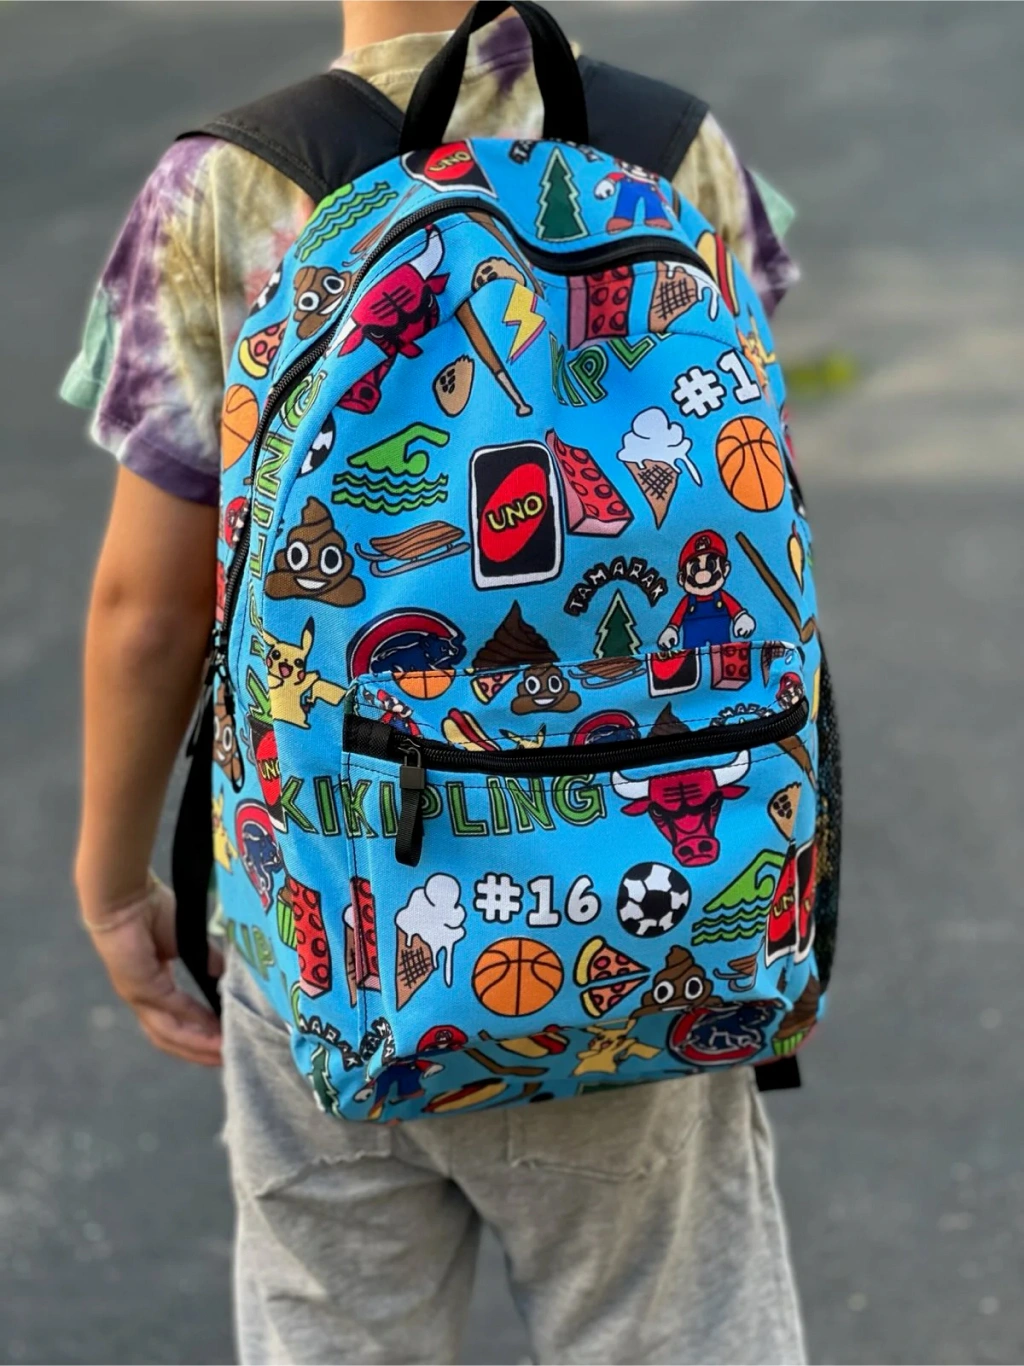 Backpack Dengan Desain Warna-Warni Dan Motif Trendi, Cocok Untuk Sekolah, Kuliah, Dan Bekerja.